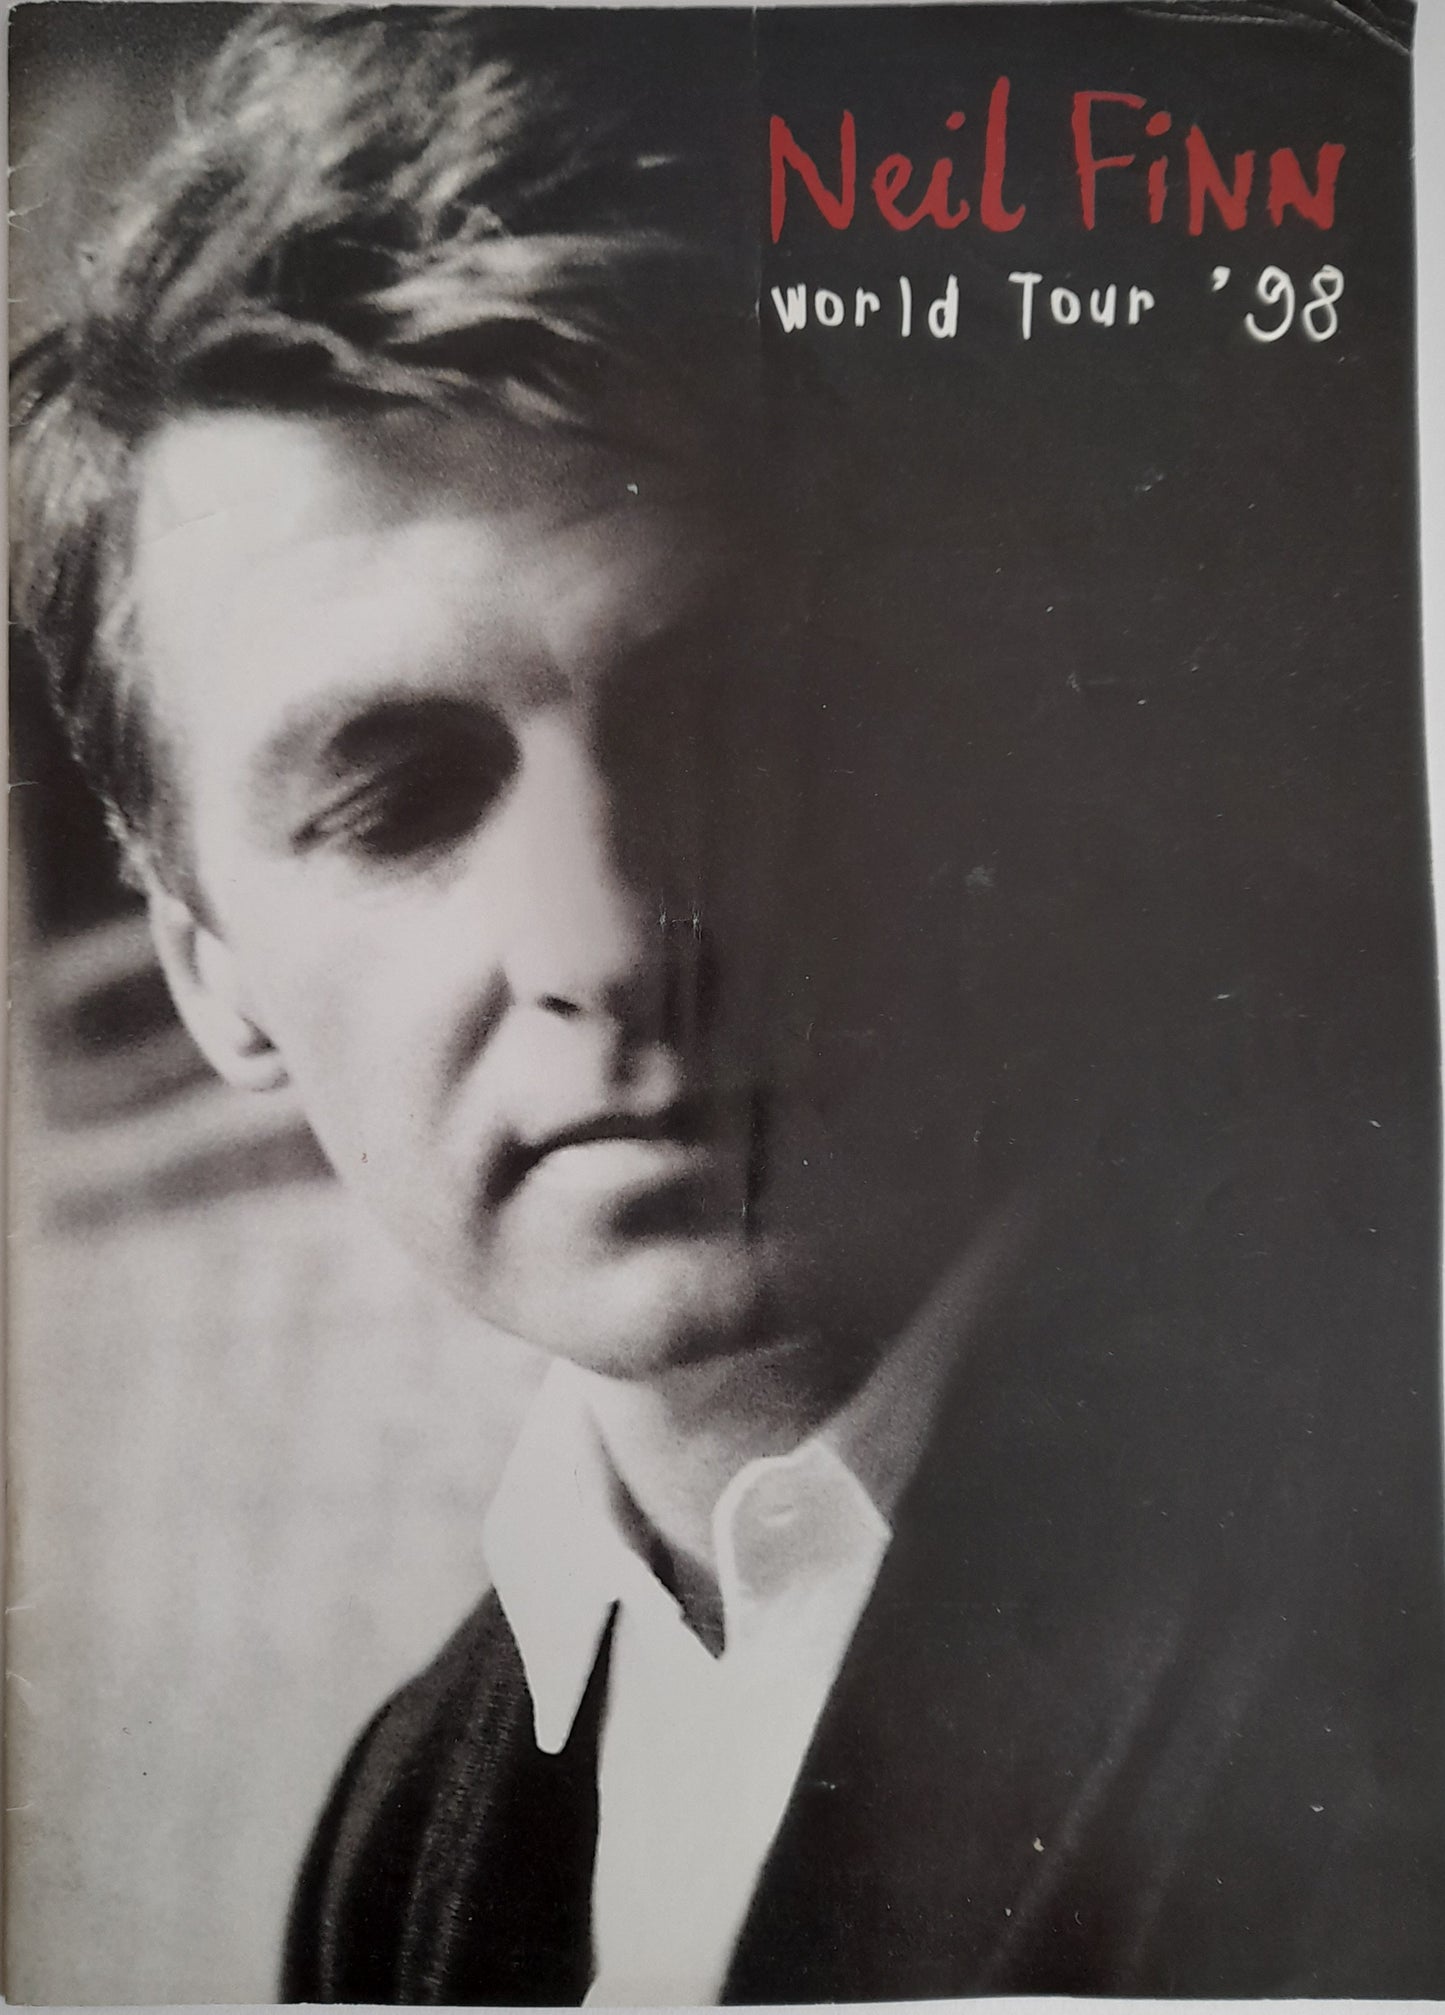 Neil Finn World Tour 98 Programme